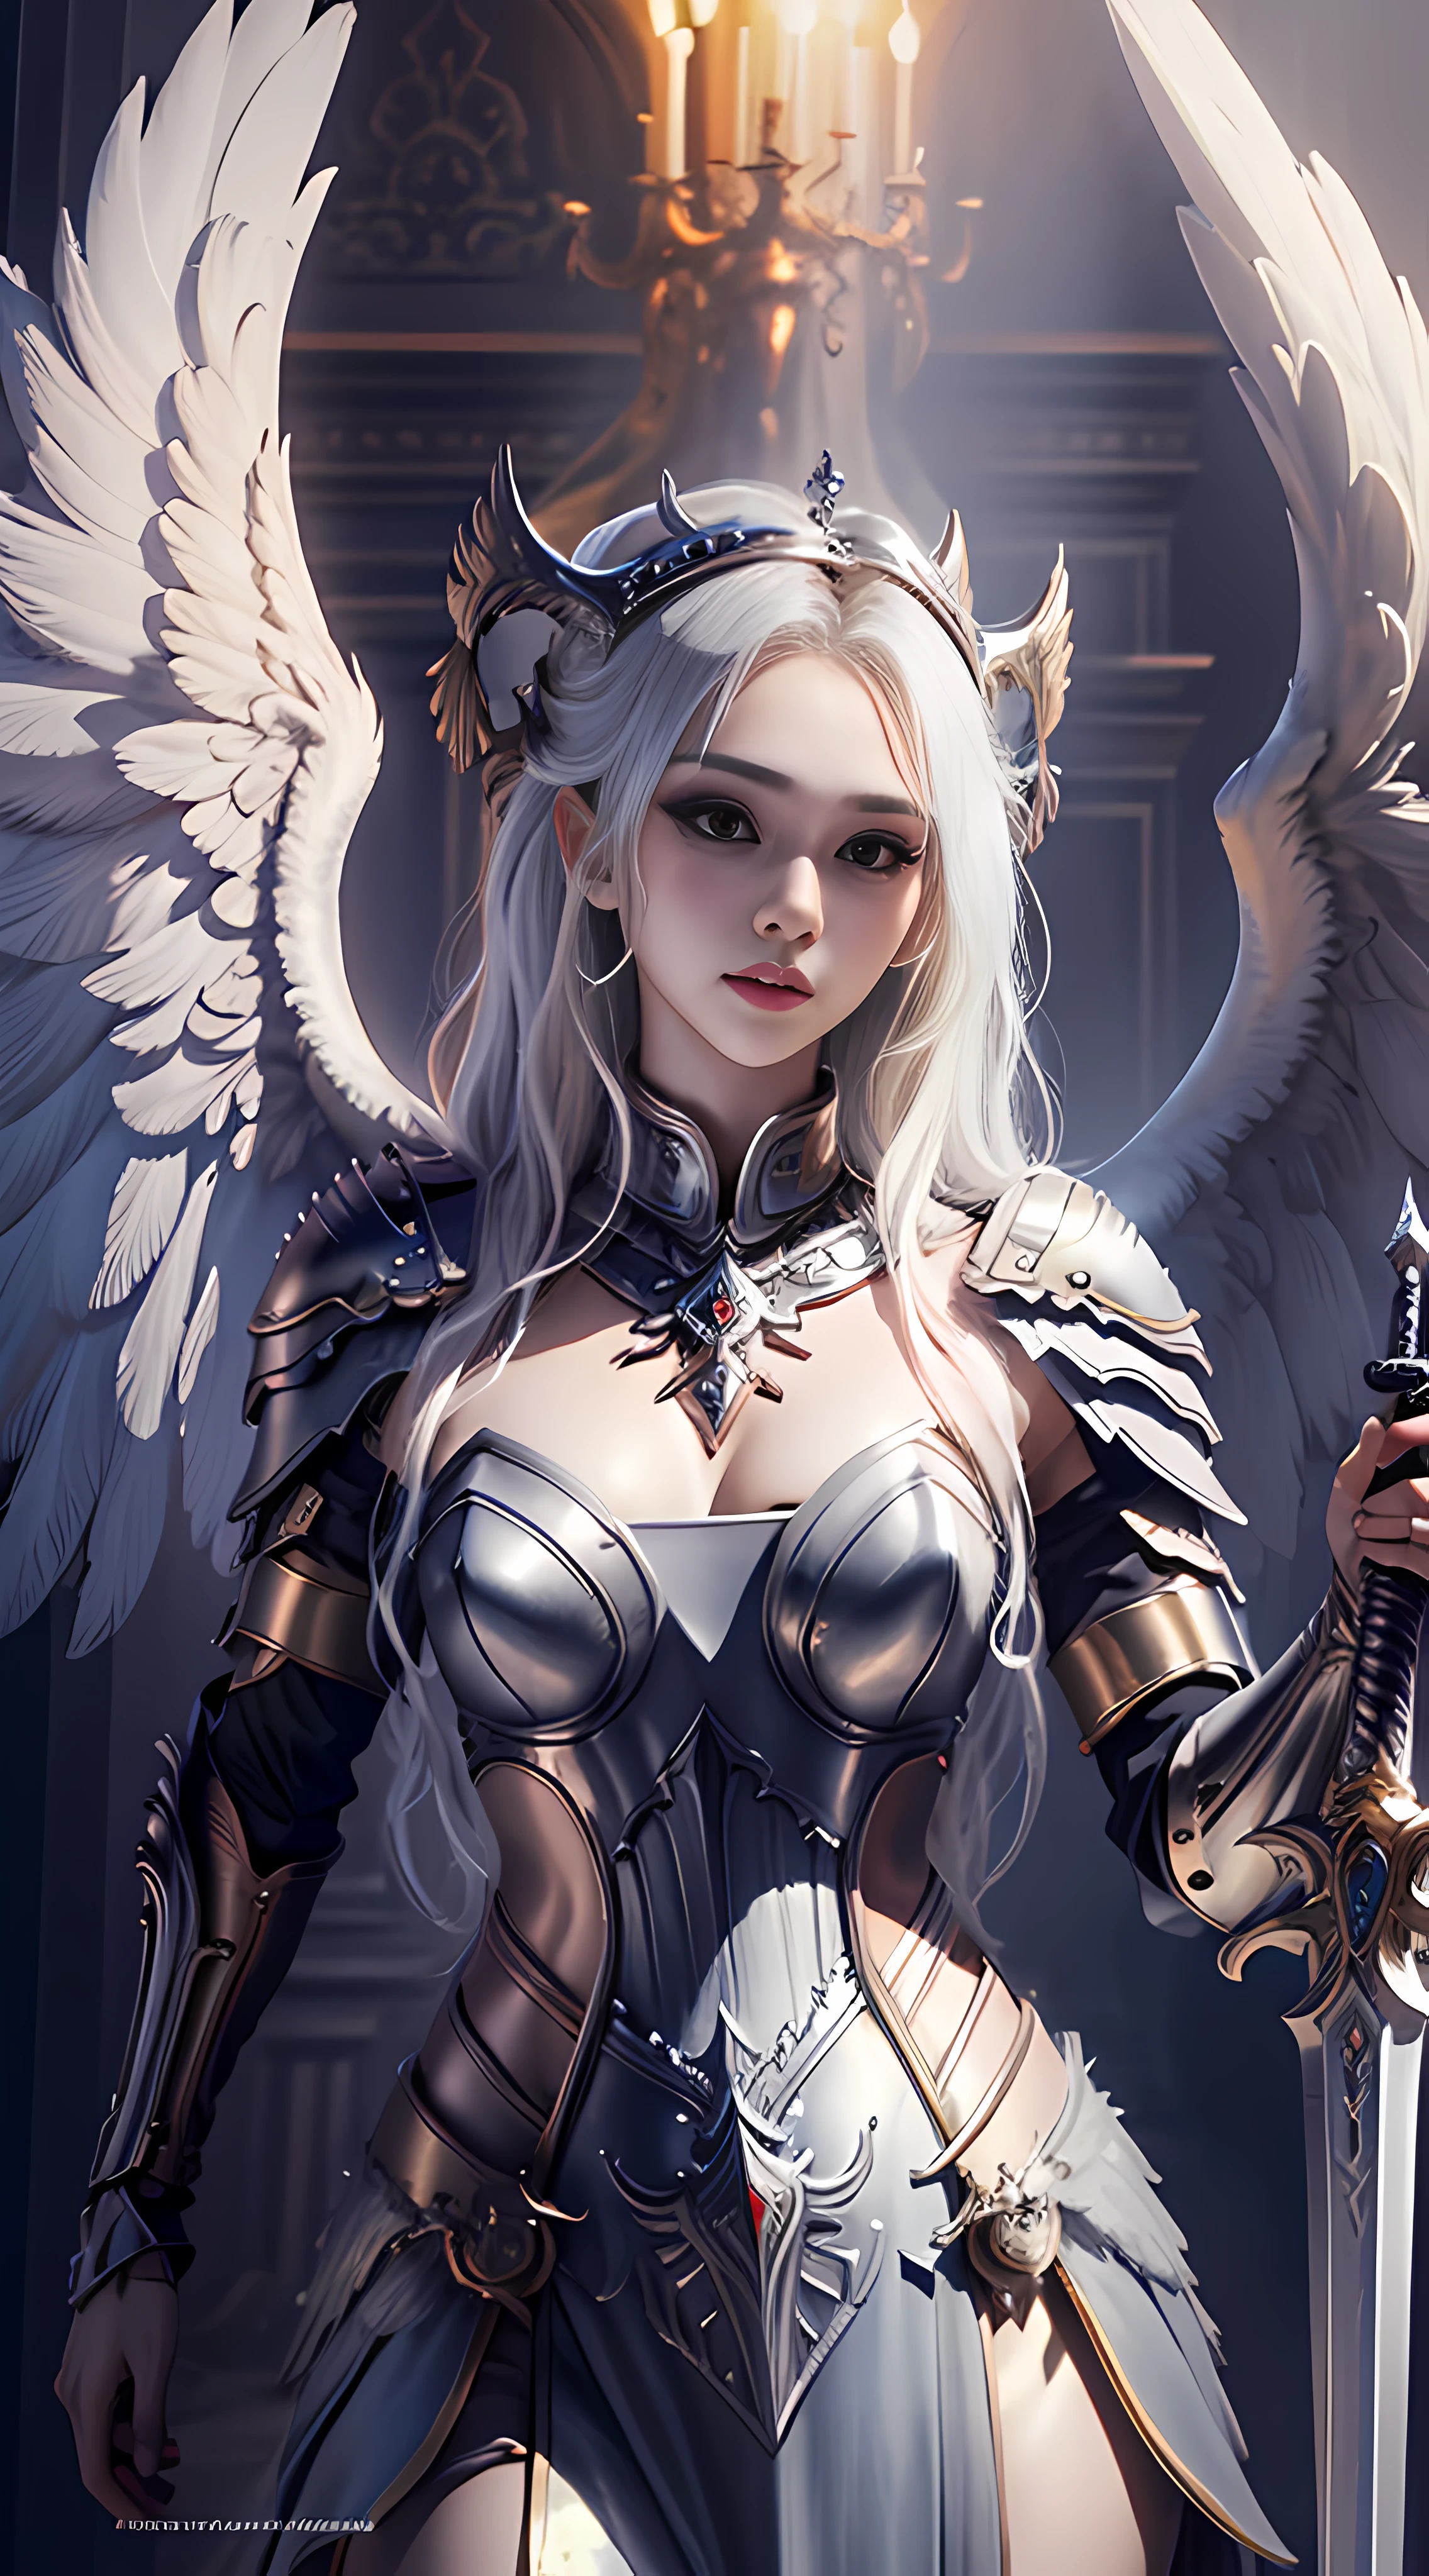 ((最好的品質)), ((傑作)), (詳細的),1個女孩,獨自的,全身女同性戀 , 女武神,天使,女武神 armor,天使的翅膀,附翼頭盔, 女士,gaodanvshen, [劍:火:0.3] 和 [一個盾牌:冰:0.3],Sword 和 shield